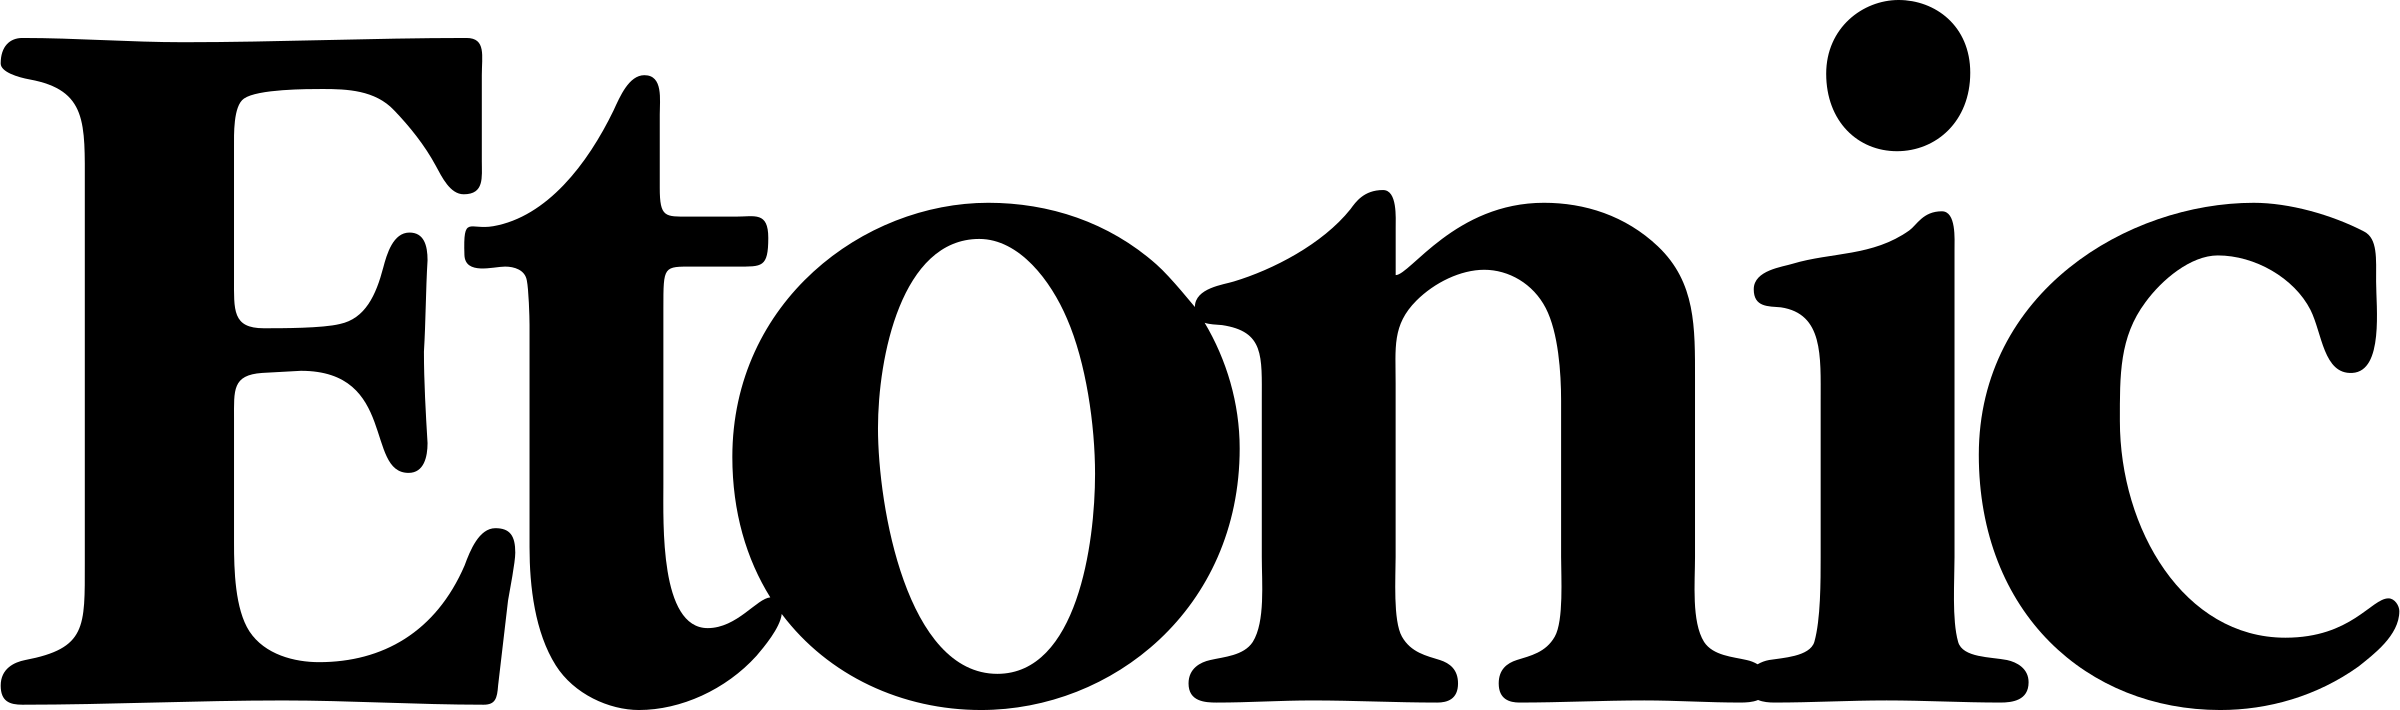 etonic-2-logo-png-transparent